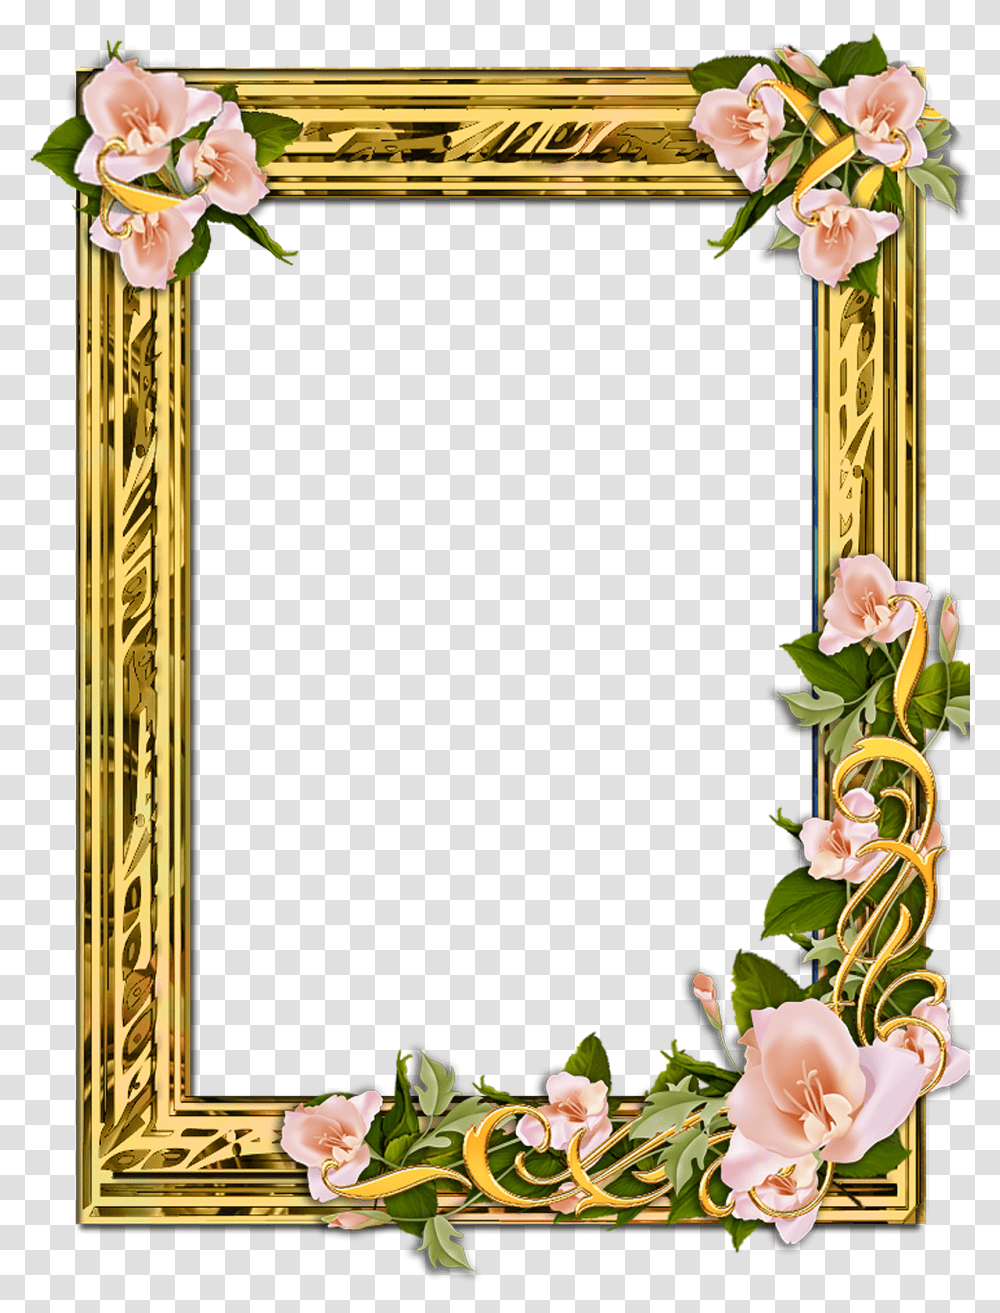 Gold Frame With Flowers Background Golden Frame Hd, Plant, Flower Arrangement, Floral Design, Pattern Transparent Png